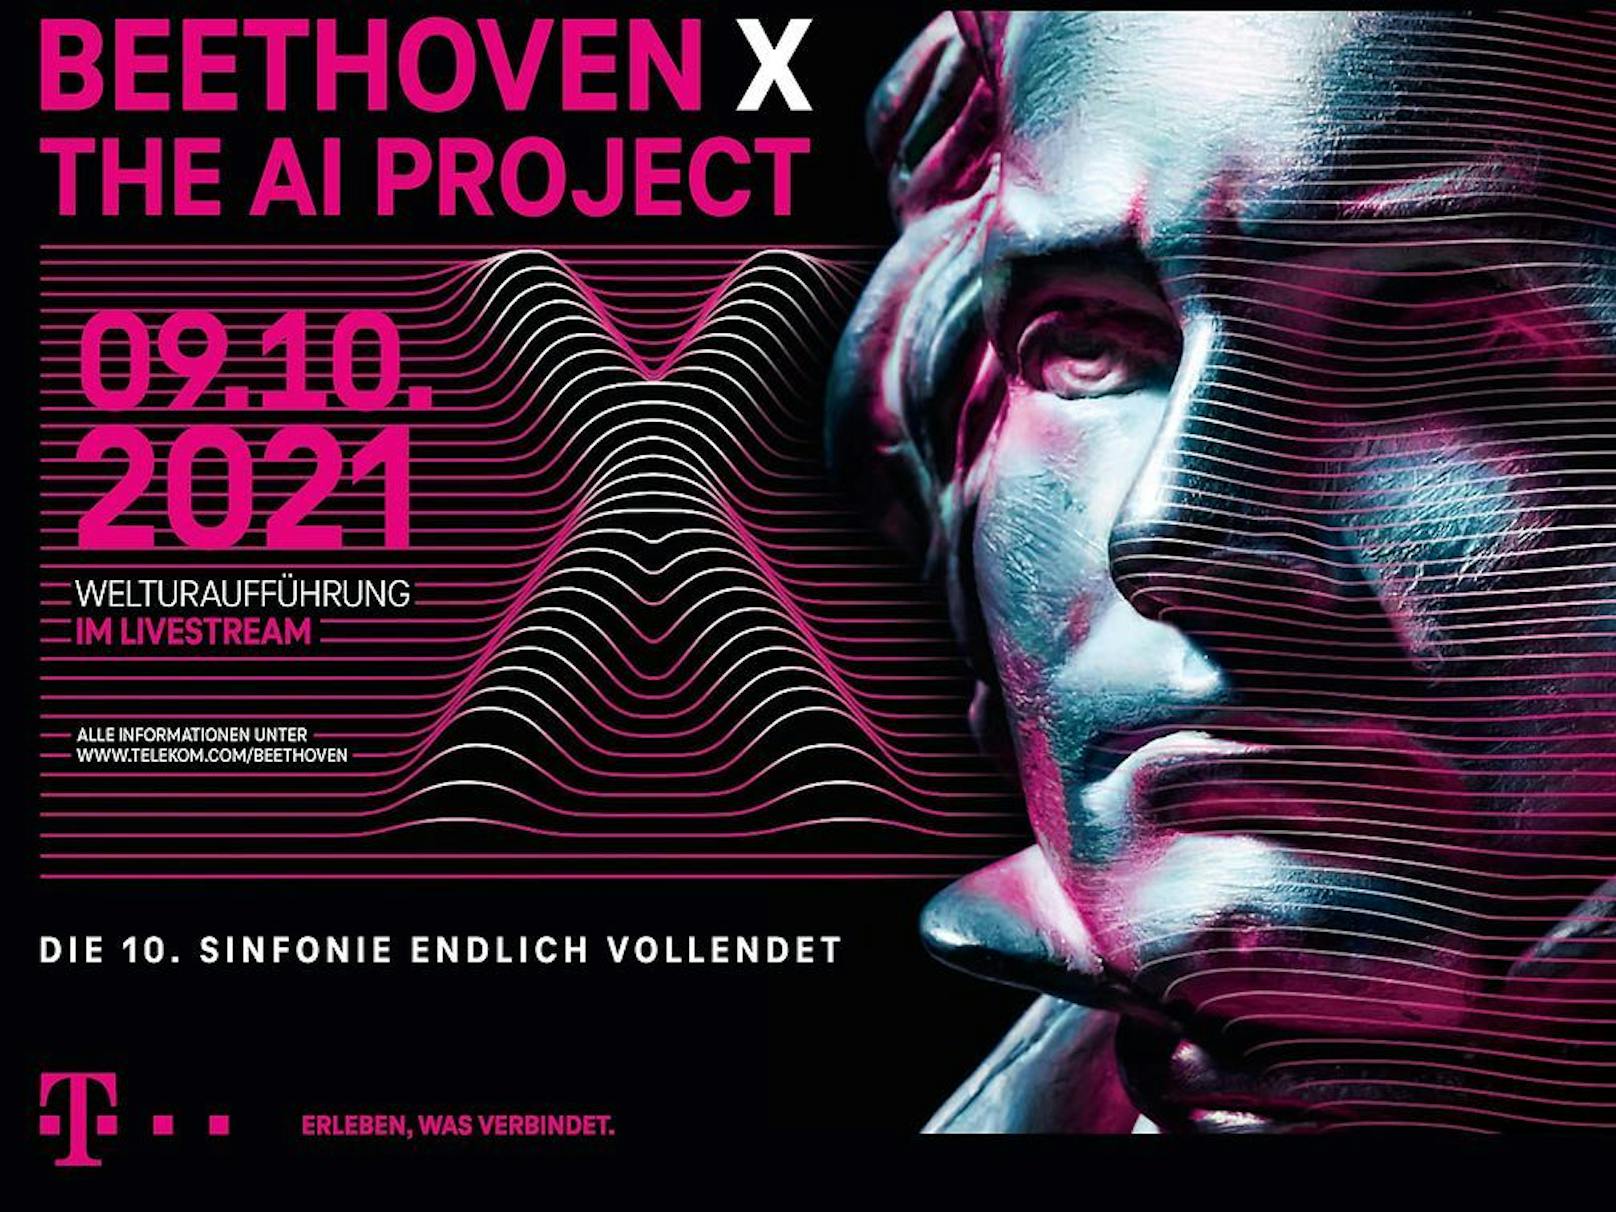 Die vollendete 10. Sinfonie Beethovens live im kostenlosen Stream.